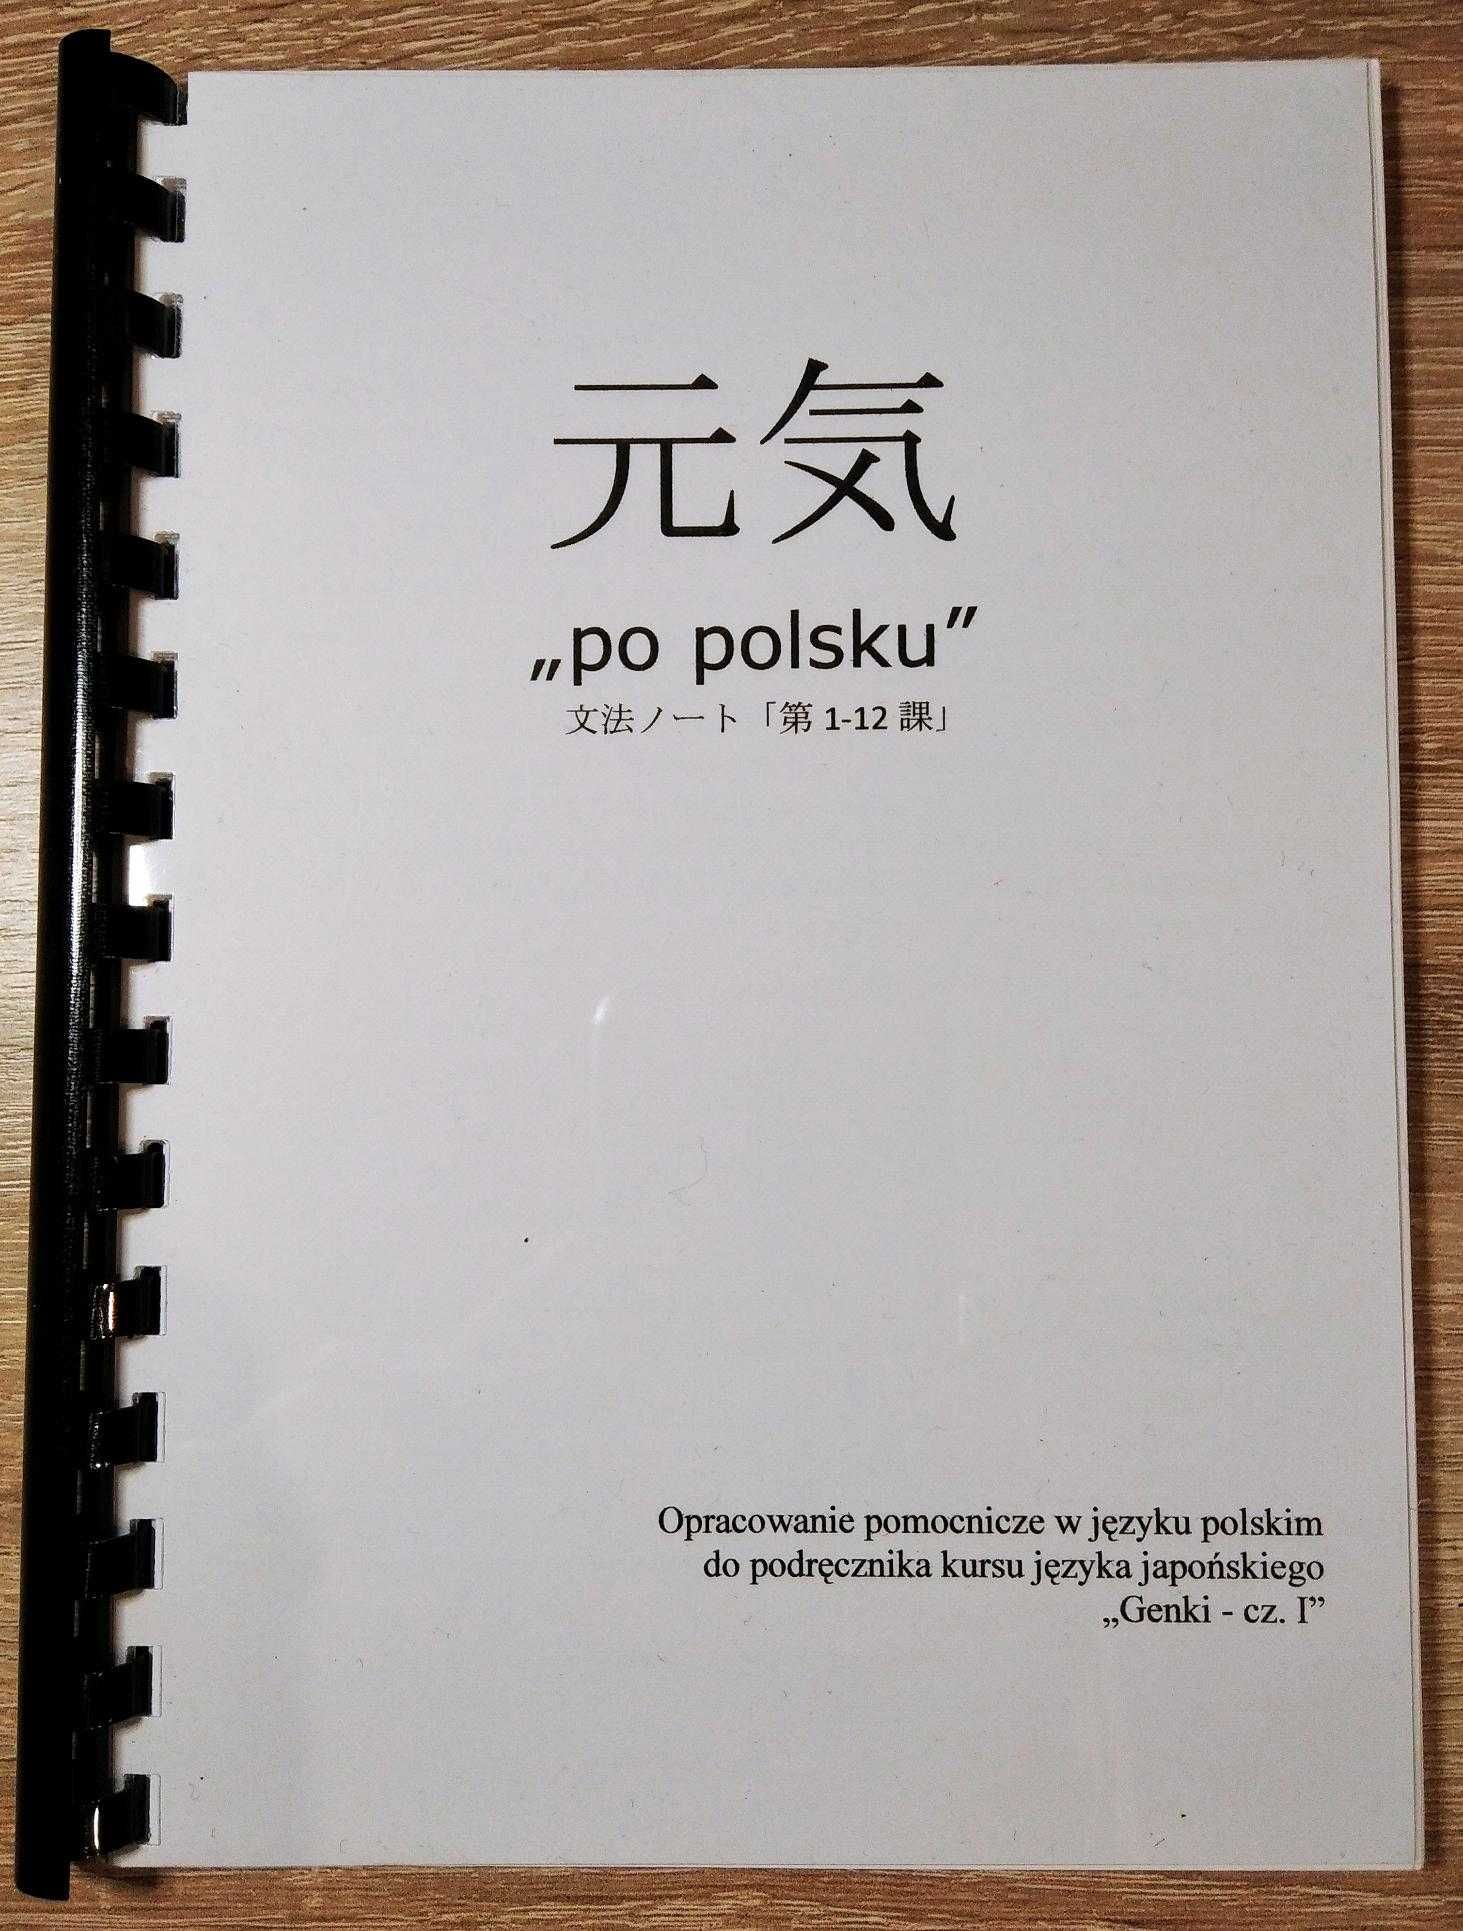 Genki Po Polski cz.1-12 Tłumaczenie kursu j. japońskiego